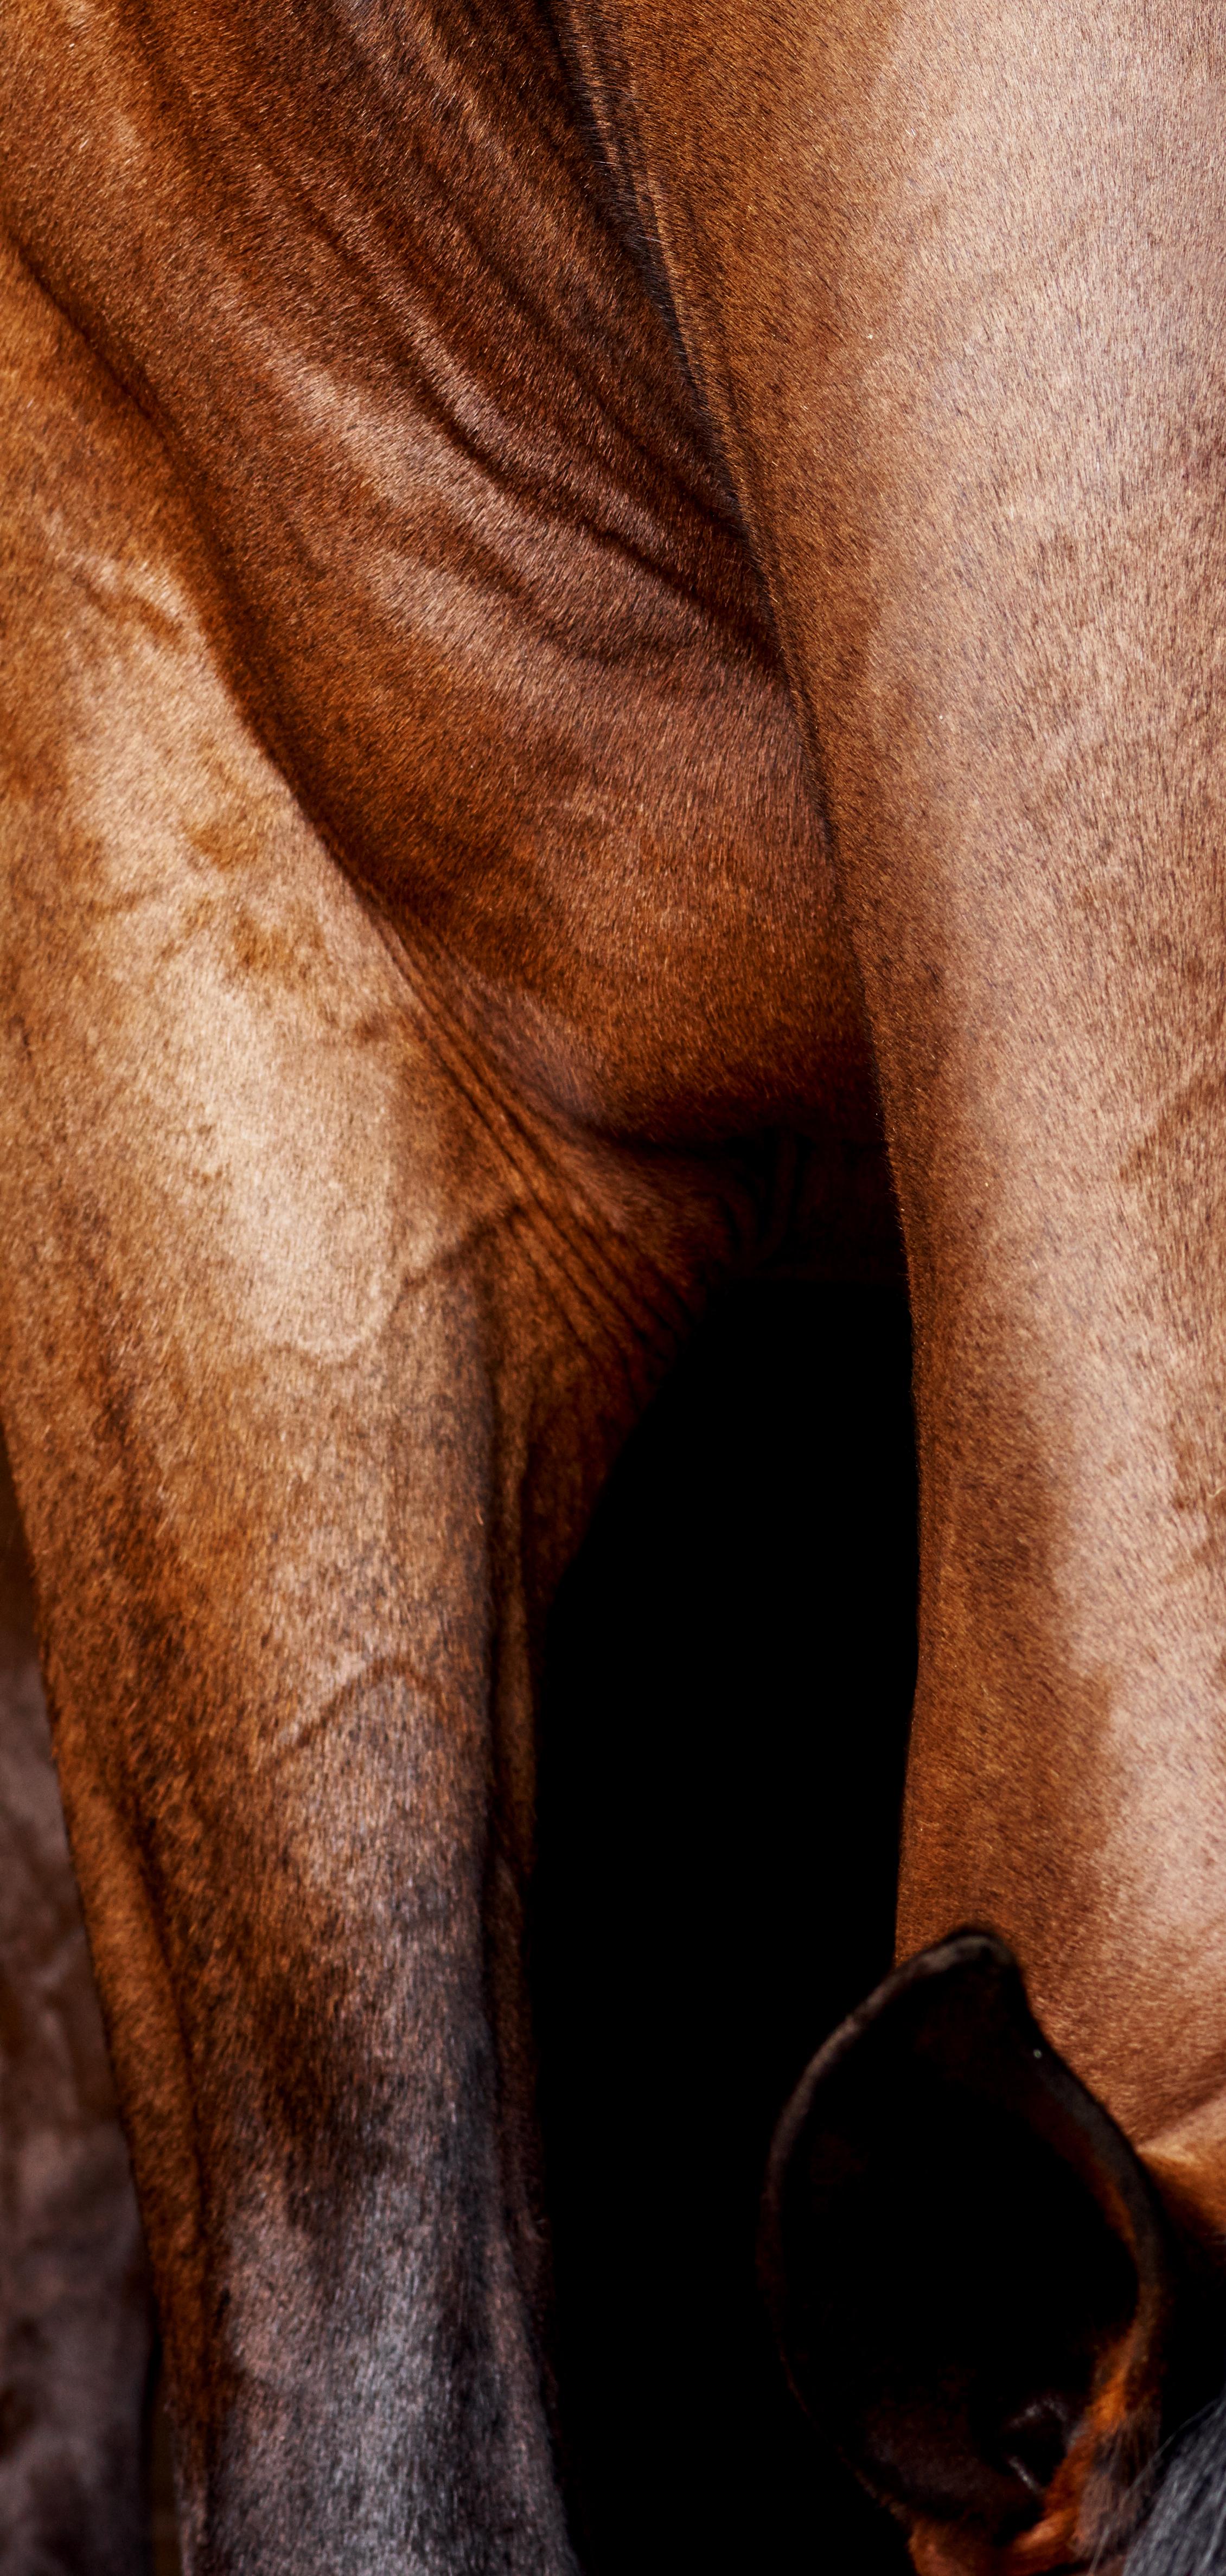 Lamerick Neck - Vollfarbiges Pferdeporträt in limitierter Auflage 2015 im Angebot 1